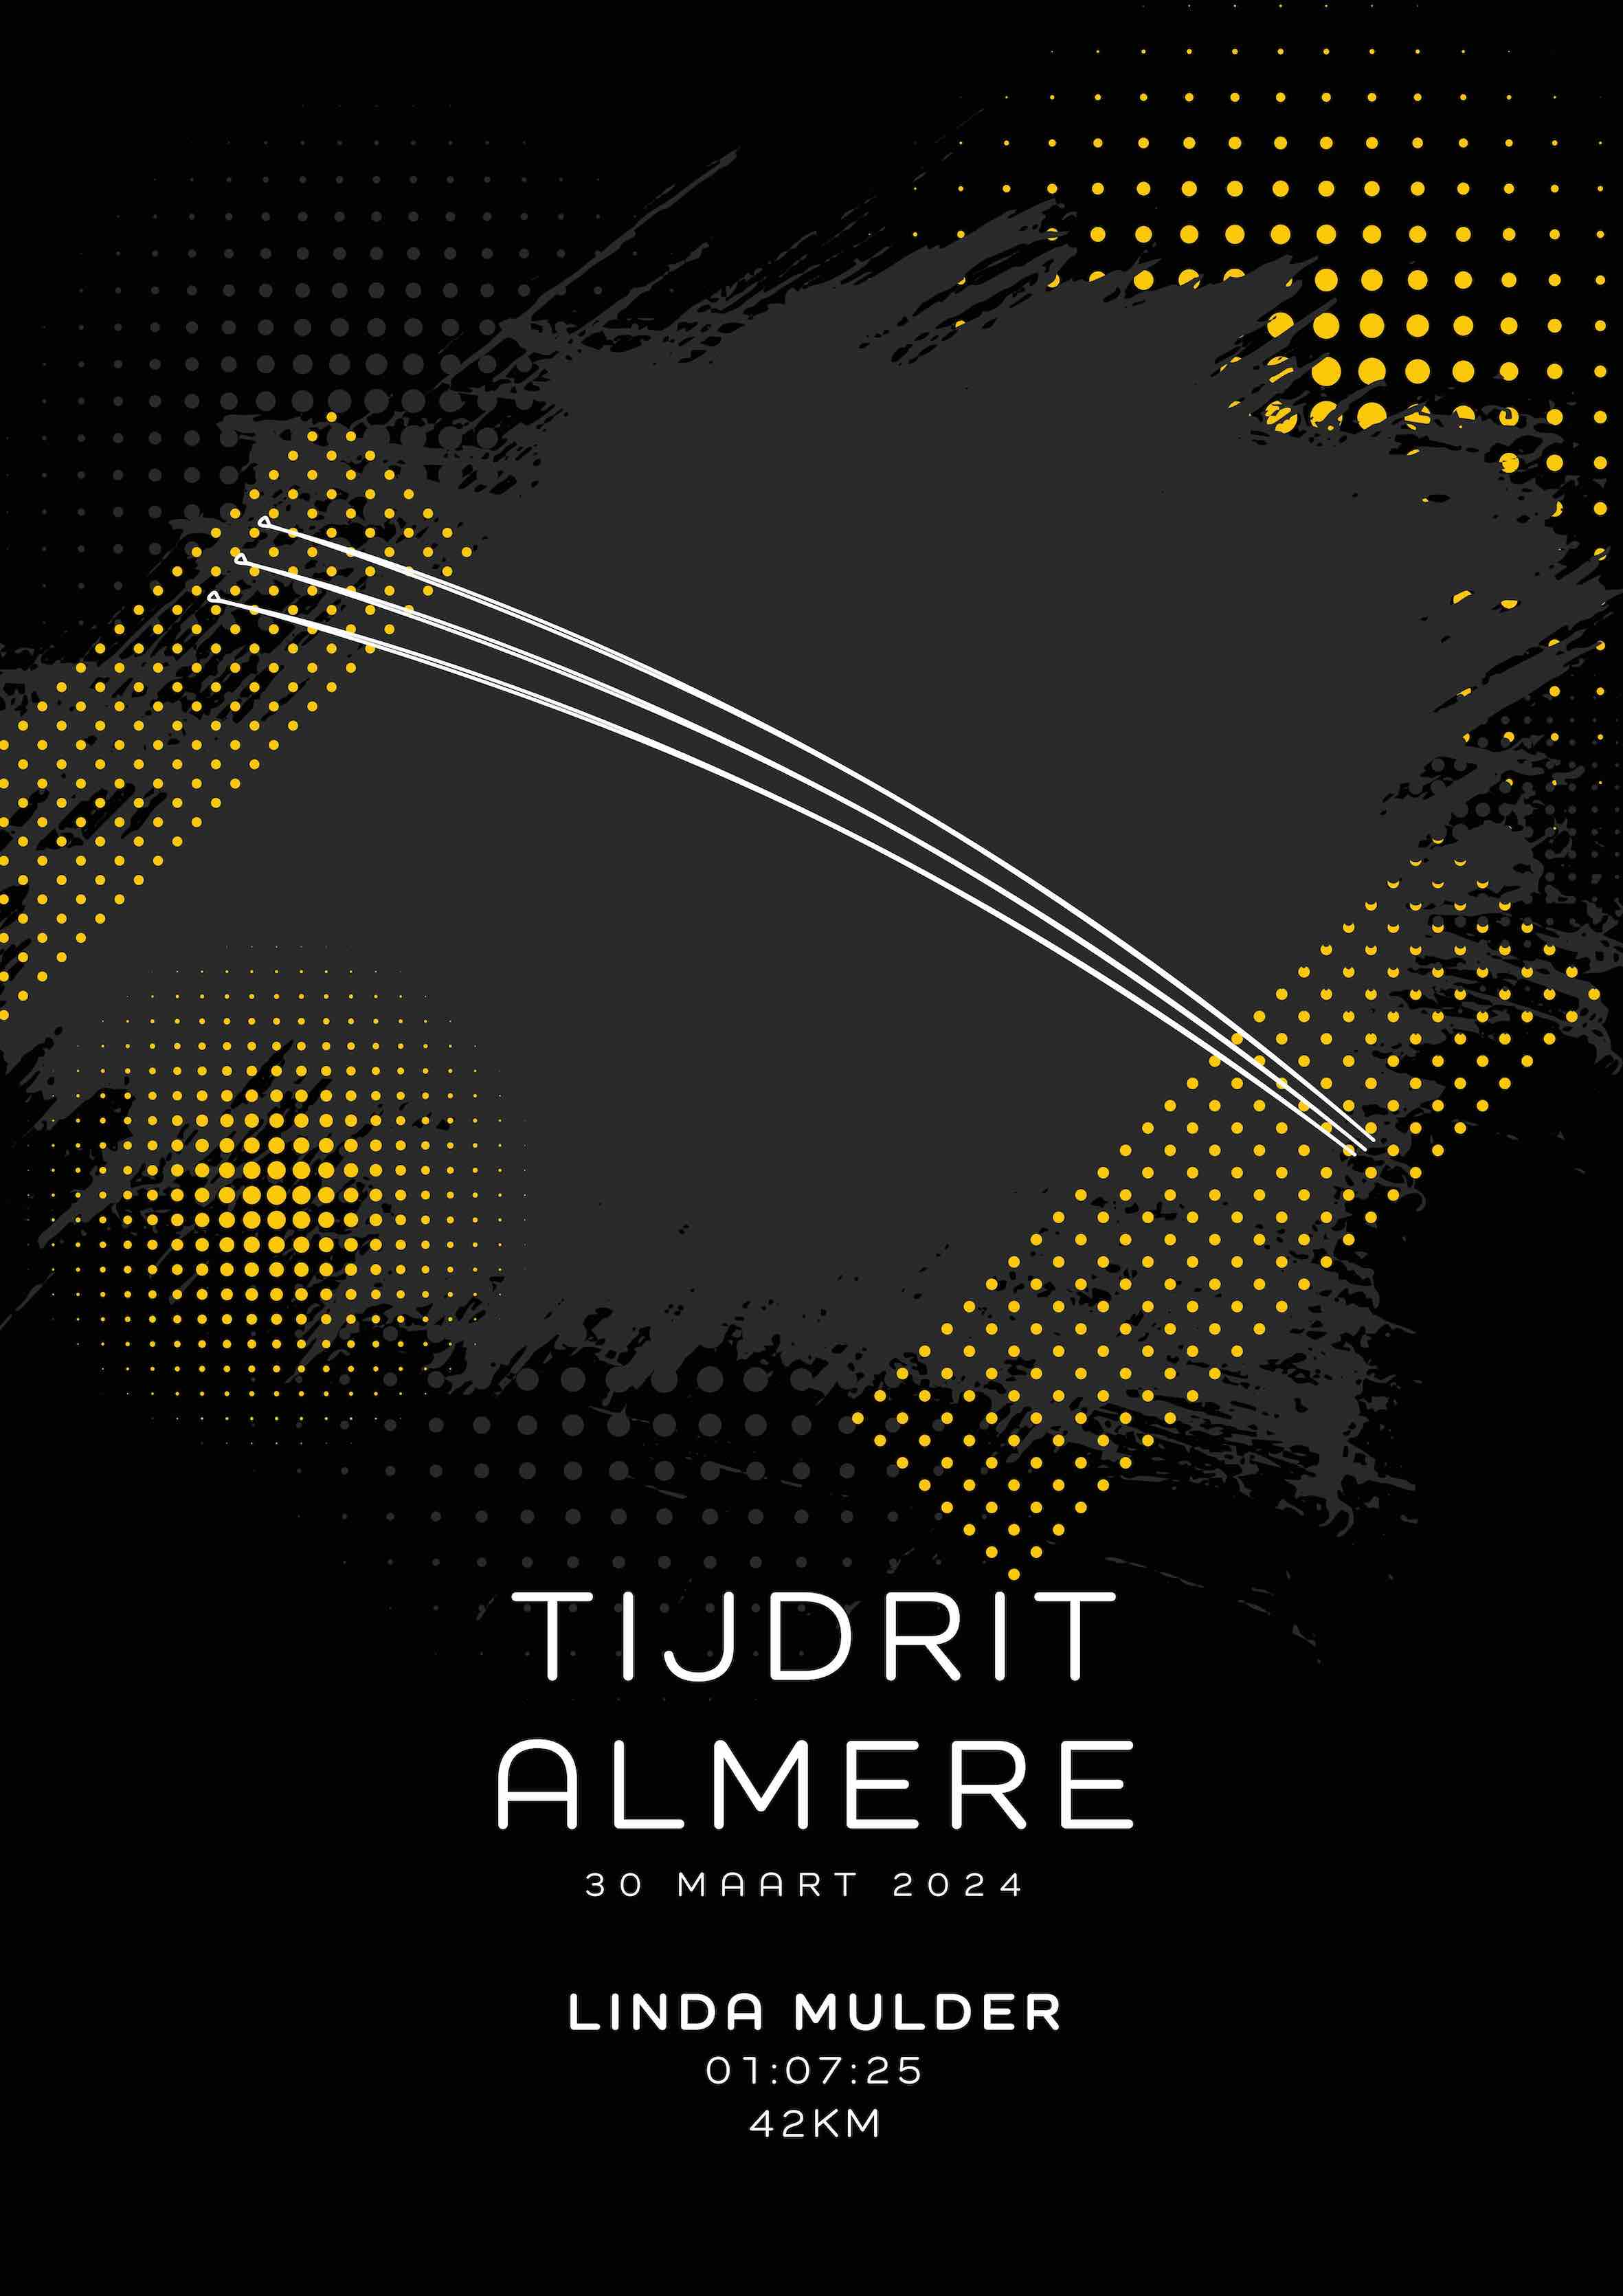 Tijdrit Almere 42KM - Modern Dark - Poster